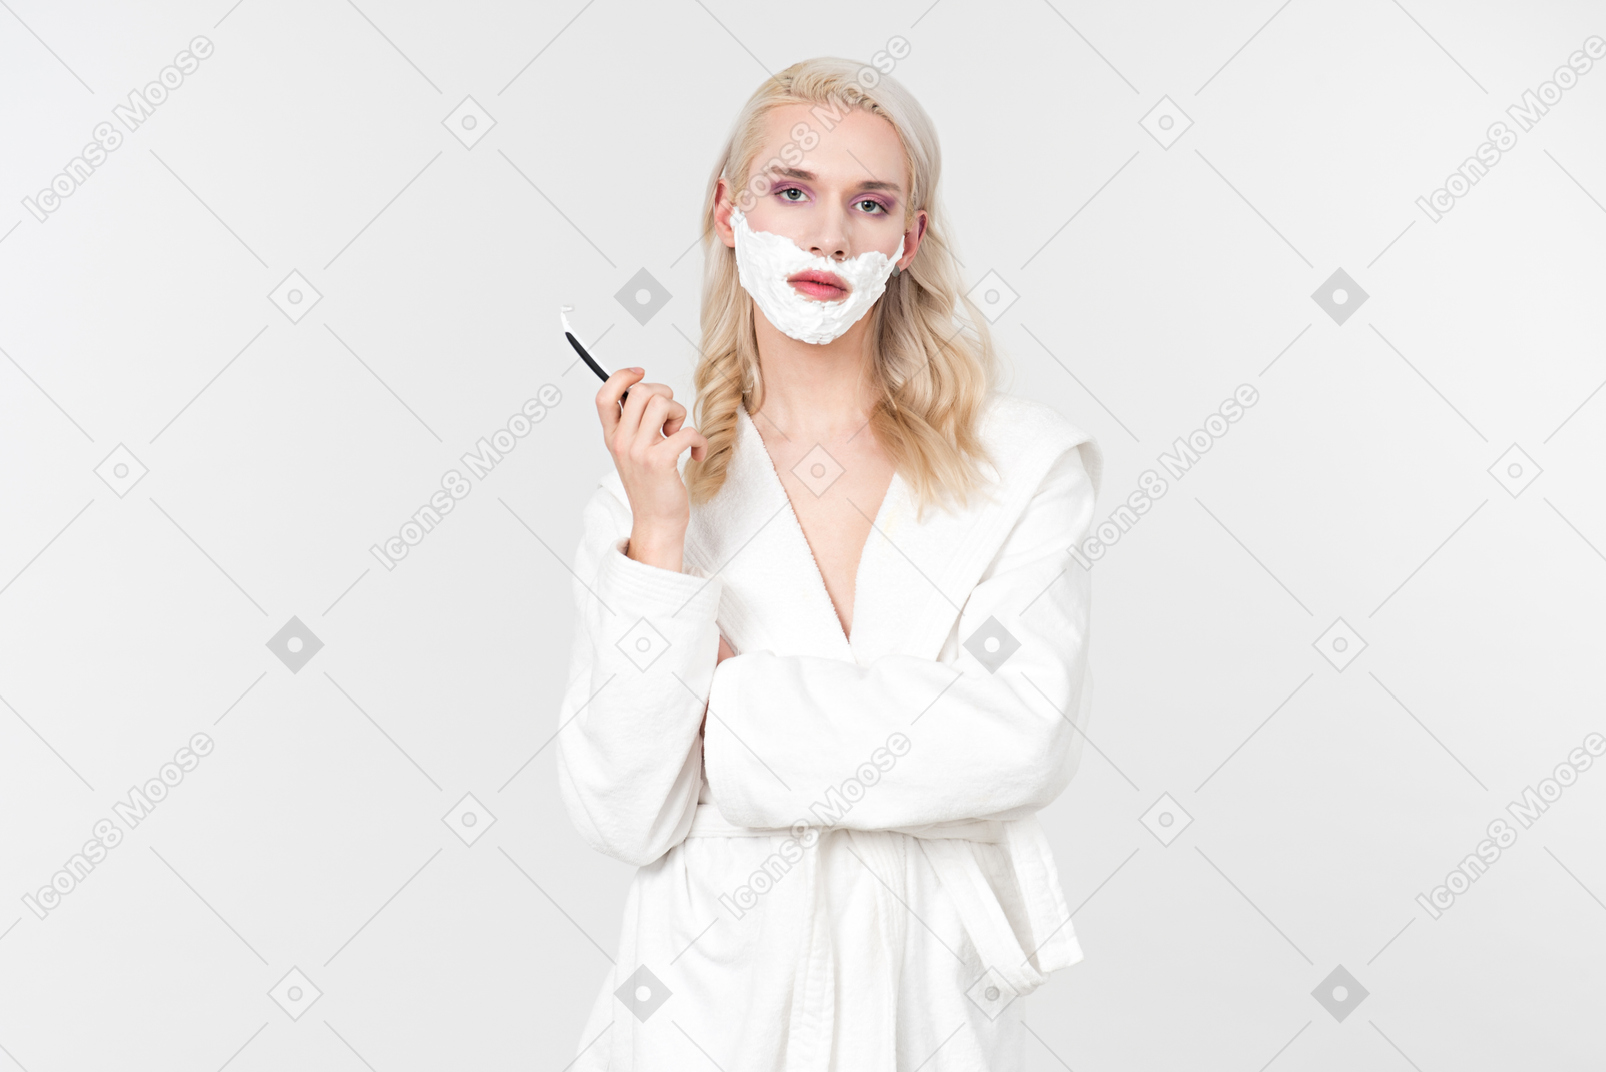 Un bel giovane dai capelli biondi in un accappatoio bianco, mentre si trovava nel processo della sua routine di cura di bellezza